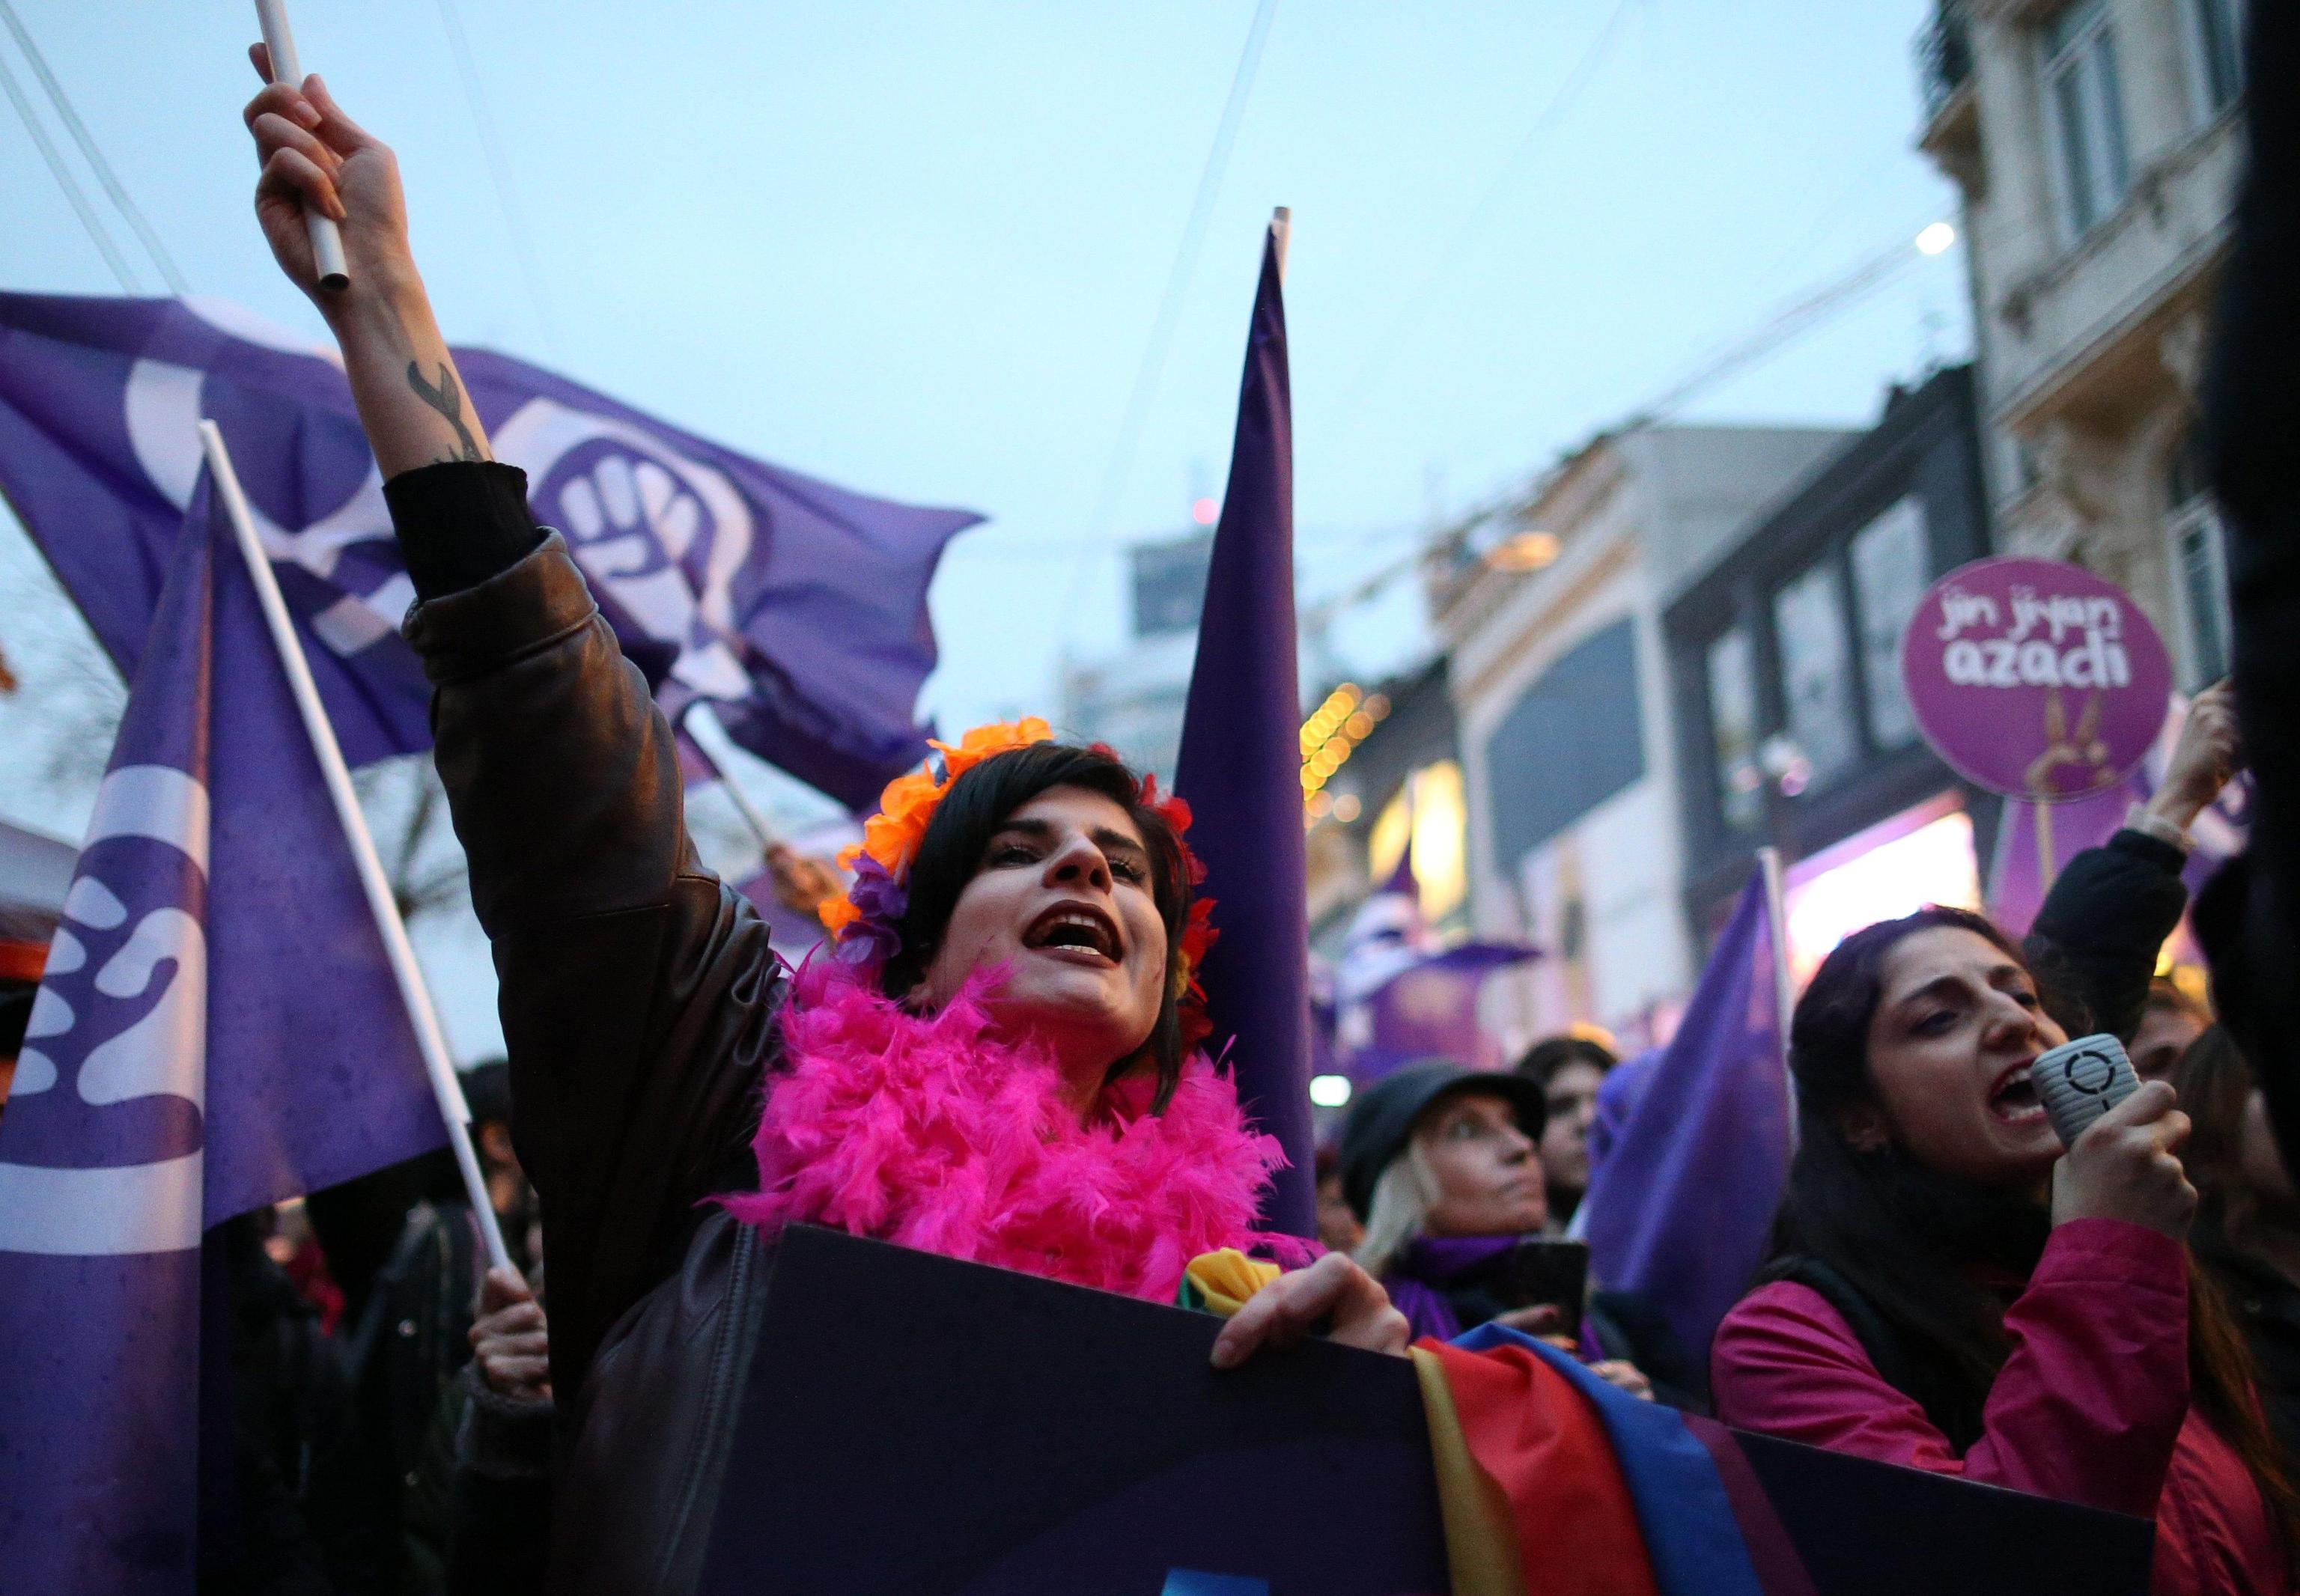 Le strade di Istanbul sono state prese d’assalto da migliaia di manifestanti. Il tema del ruolo femminile all’interno della società è ancor più importante in un paese come la Turchia, dove nelle zone rurali la donna è ancora assoggettata al marito, al padre o al fratello